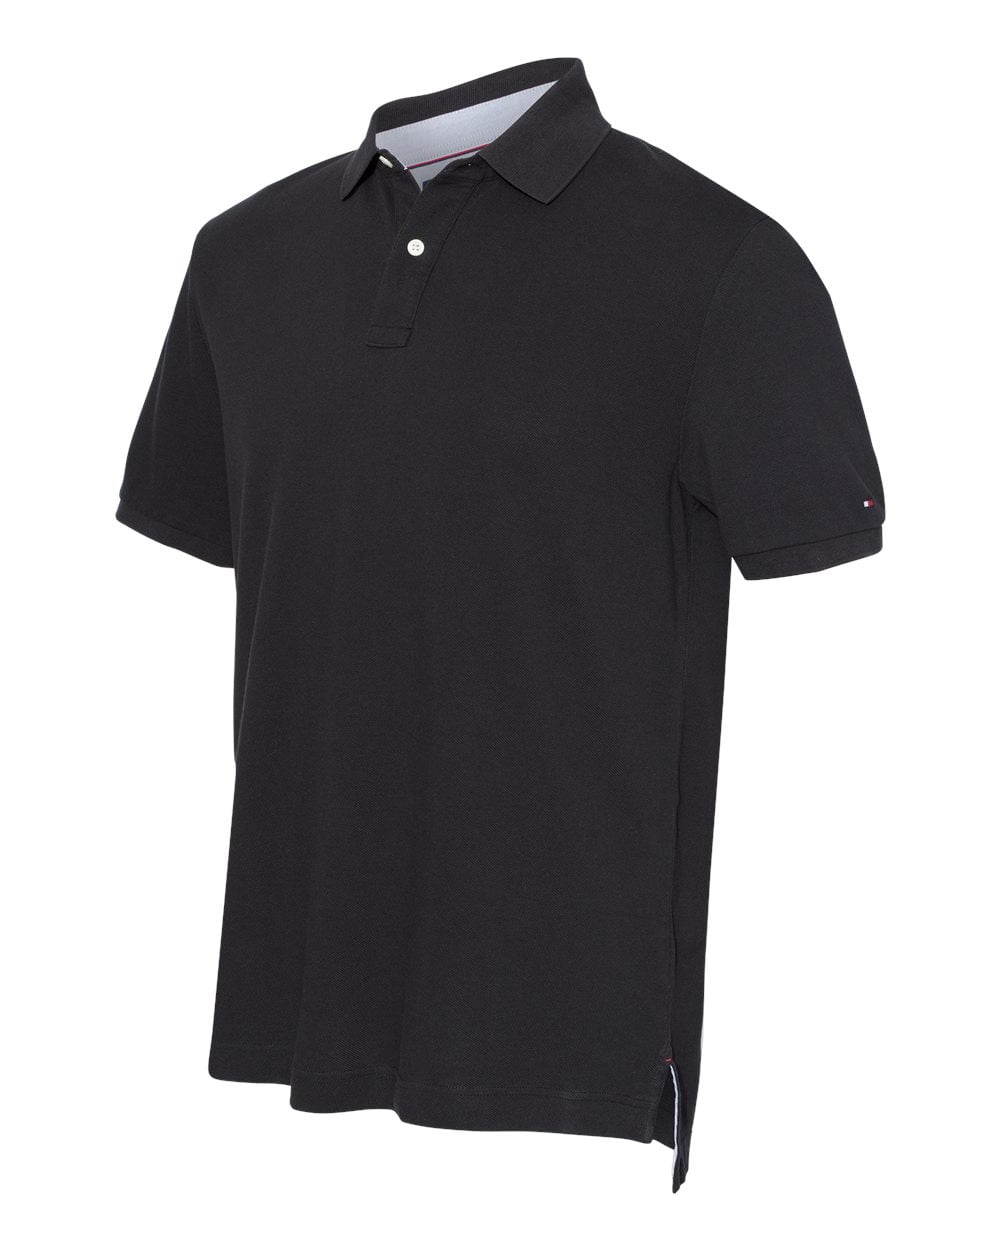 Tommy Hilfiger Mens Classic Fit Ivy Pique Sport Shirt - Walmart.com